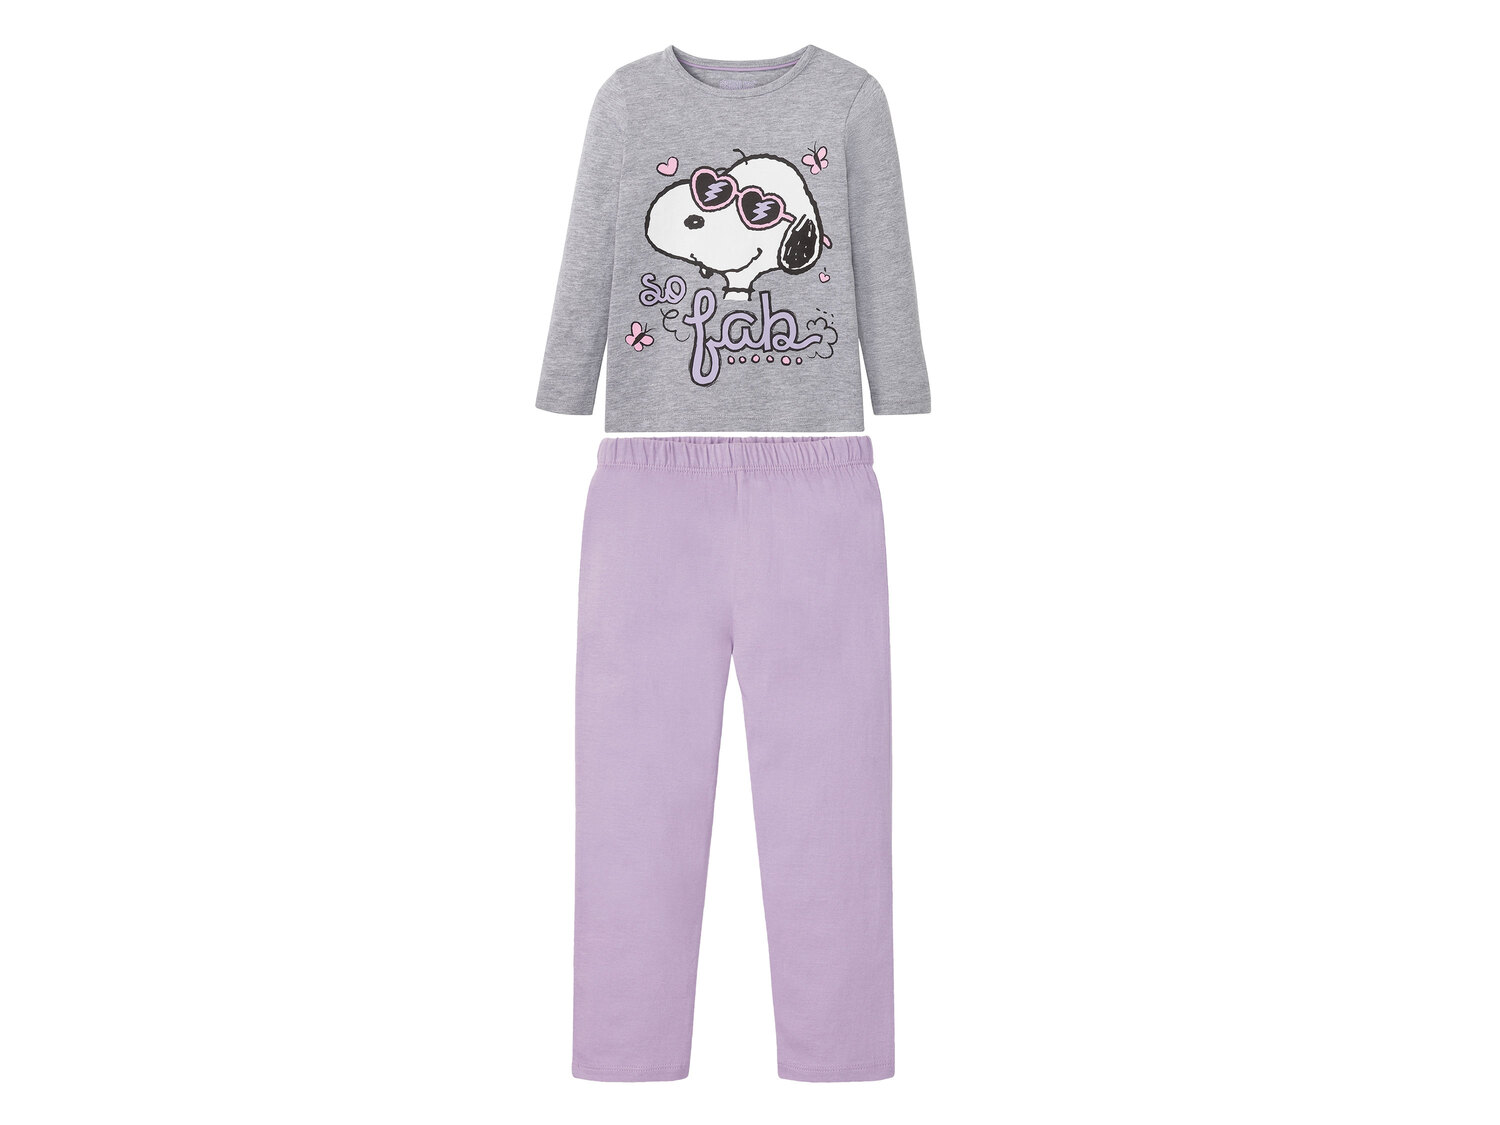 Pyjama enfant , le prix 6.99 &#8364; 
- Du 2-4 ans au 8-10 ans selon mod&egrave;le.
- ...